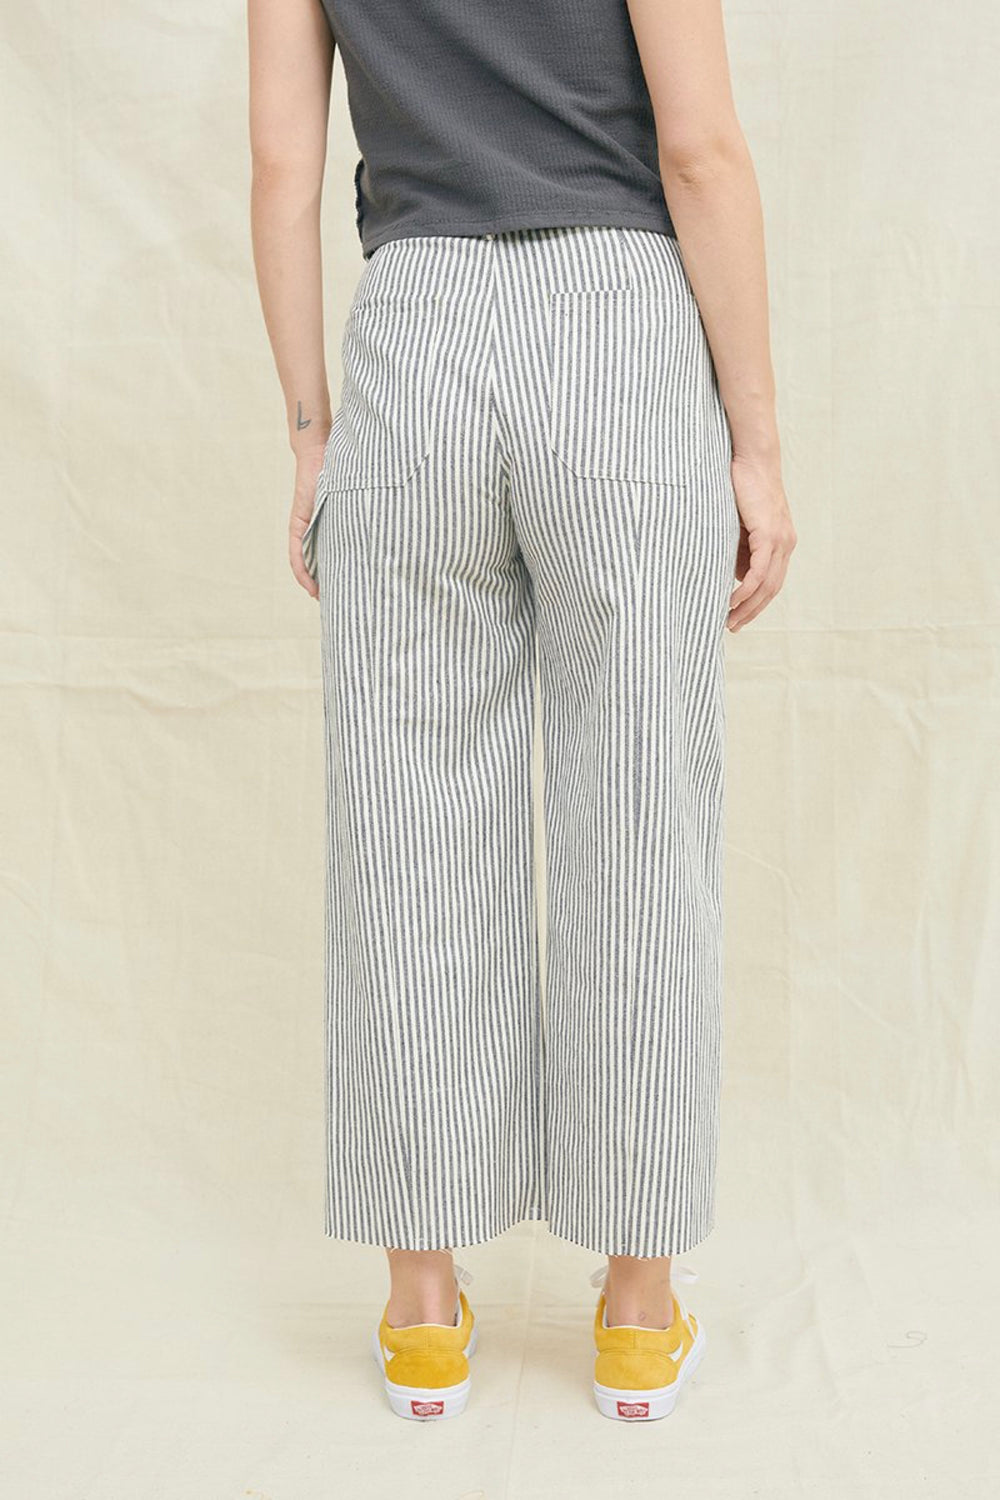 Stripe Utility Pants